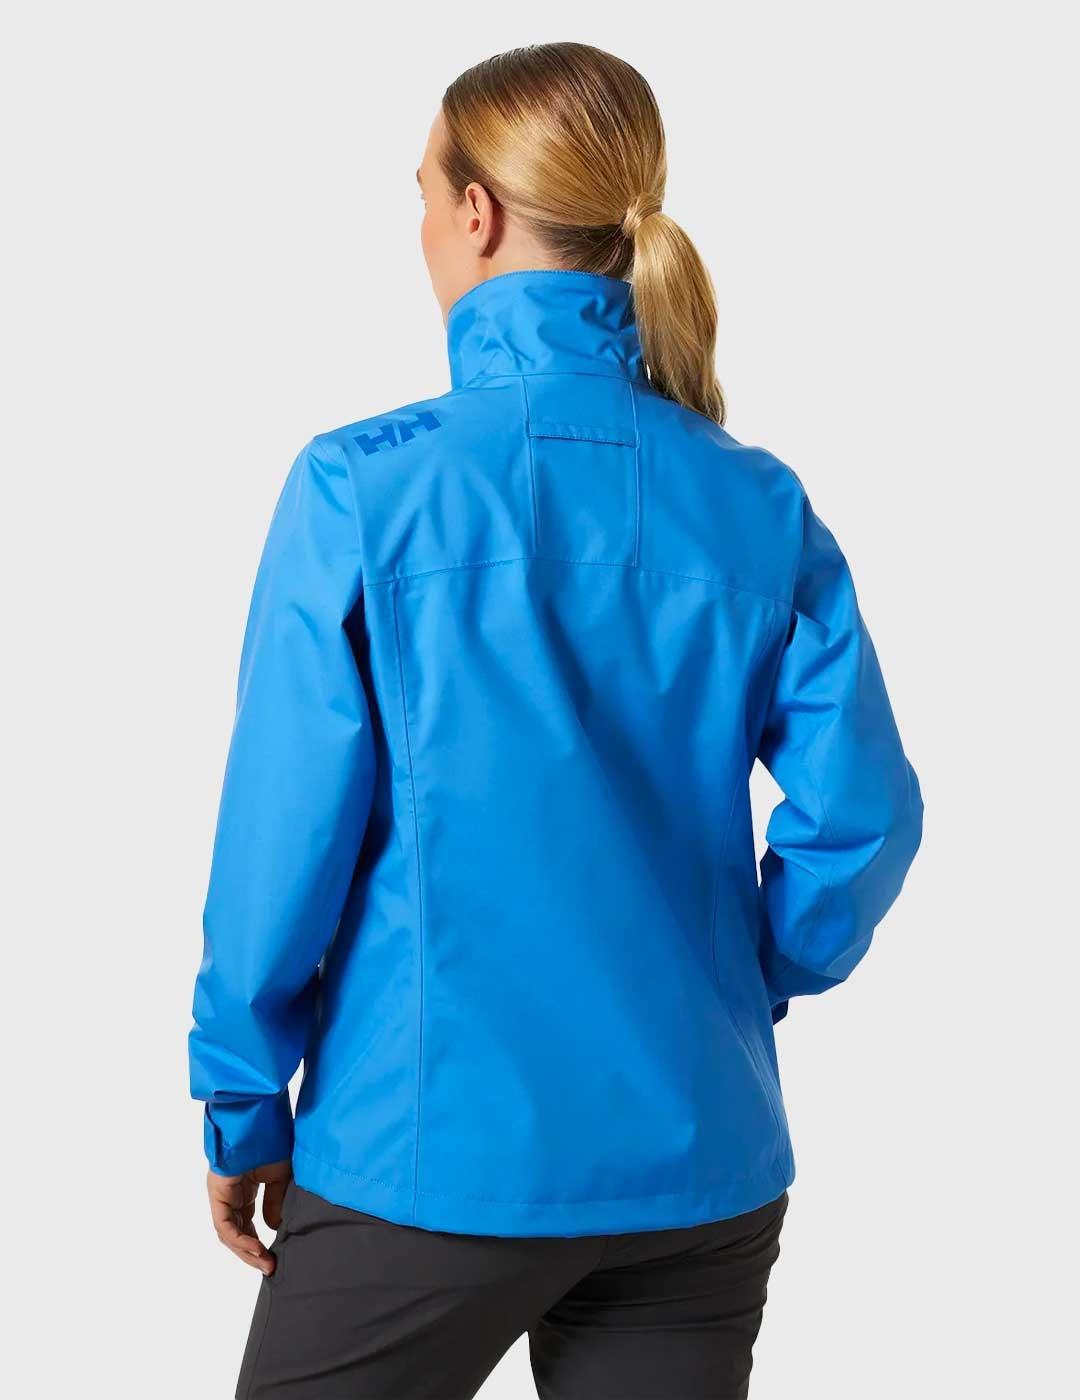 Chaqueta Helly Hansen Crew Jacket azul para mujer